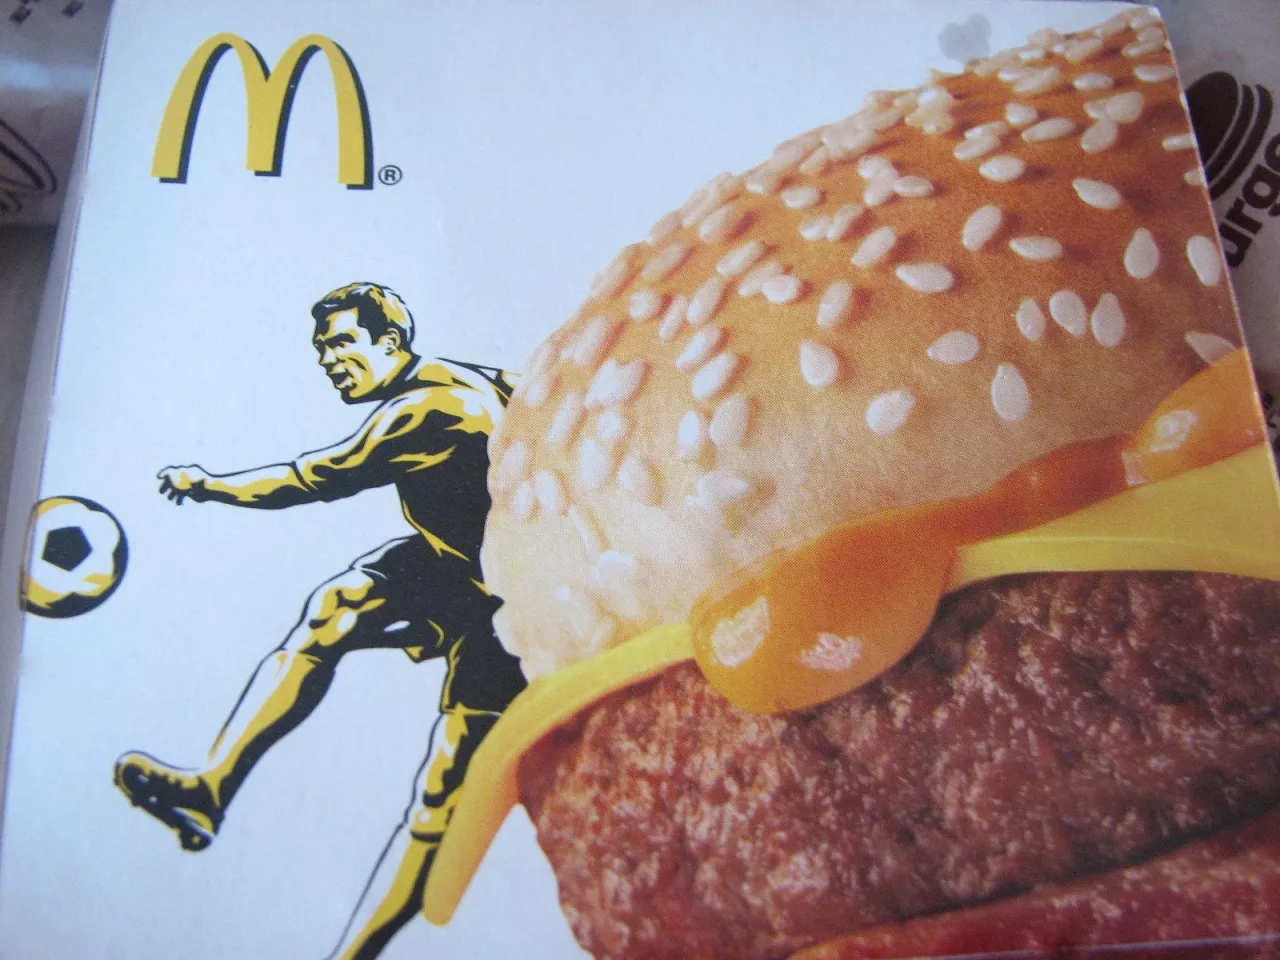 Burgery McDonald‘s (Flickr.com/ Renata F. Oliveira)